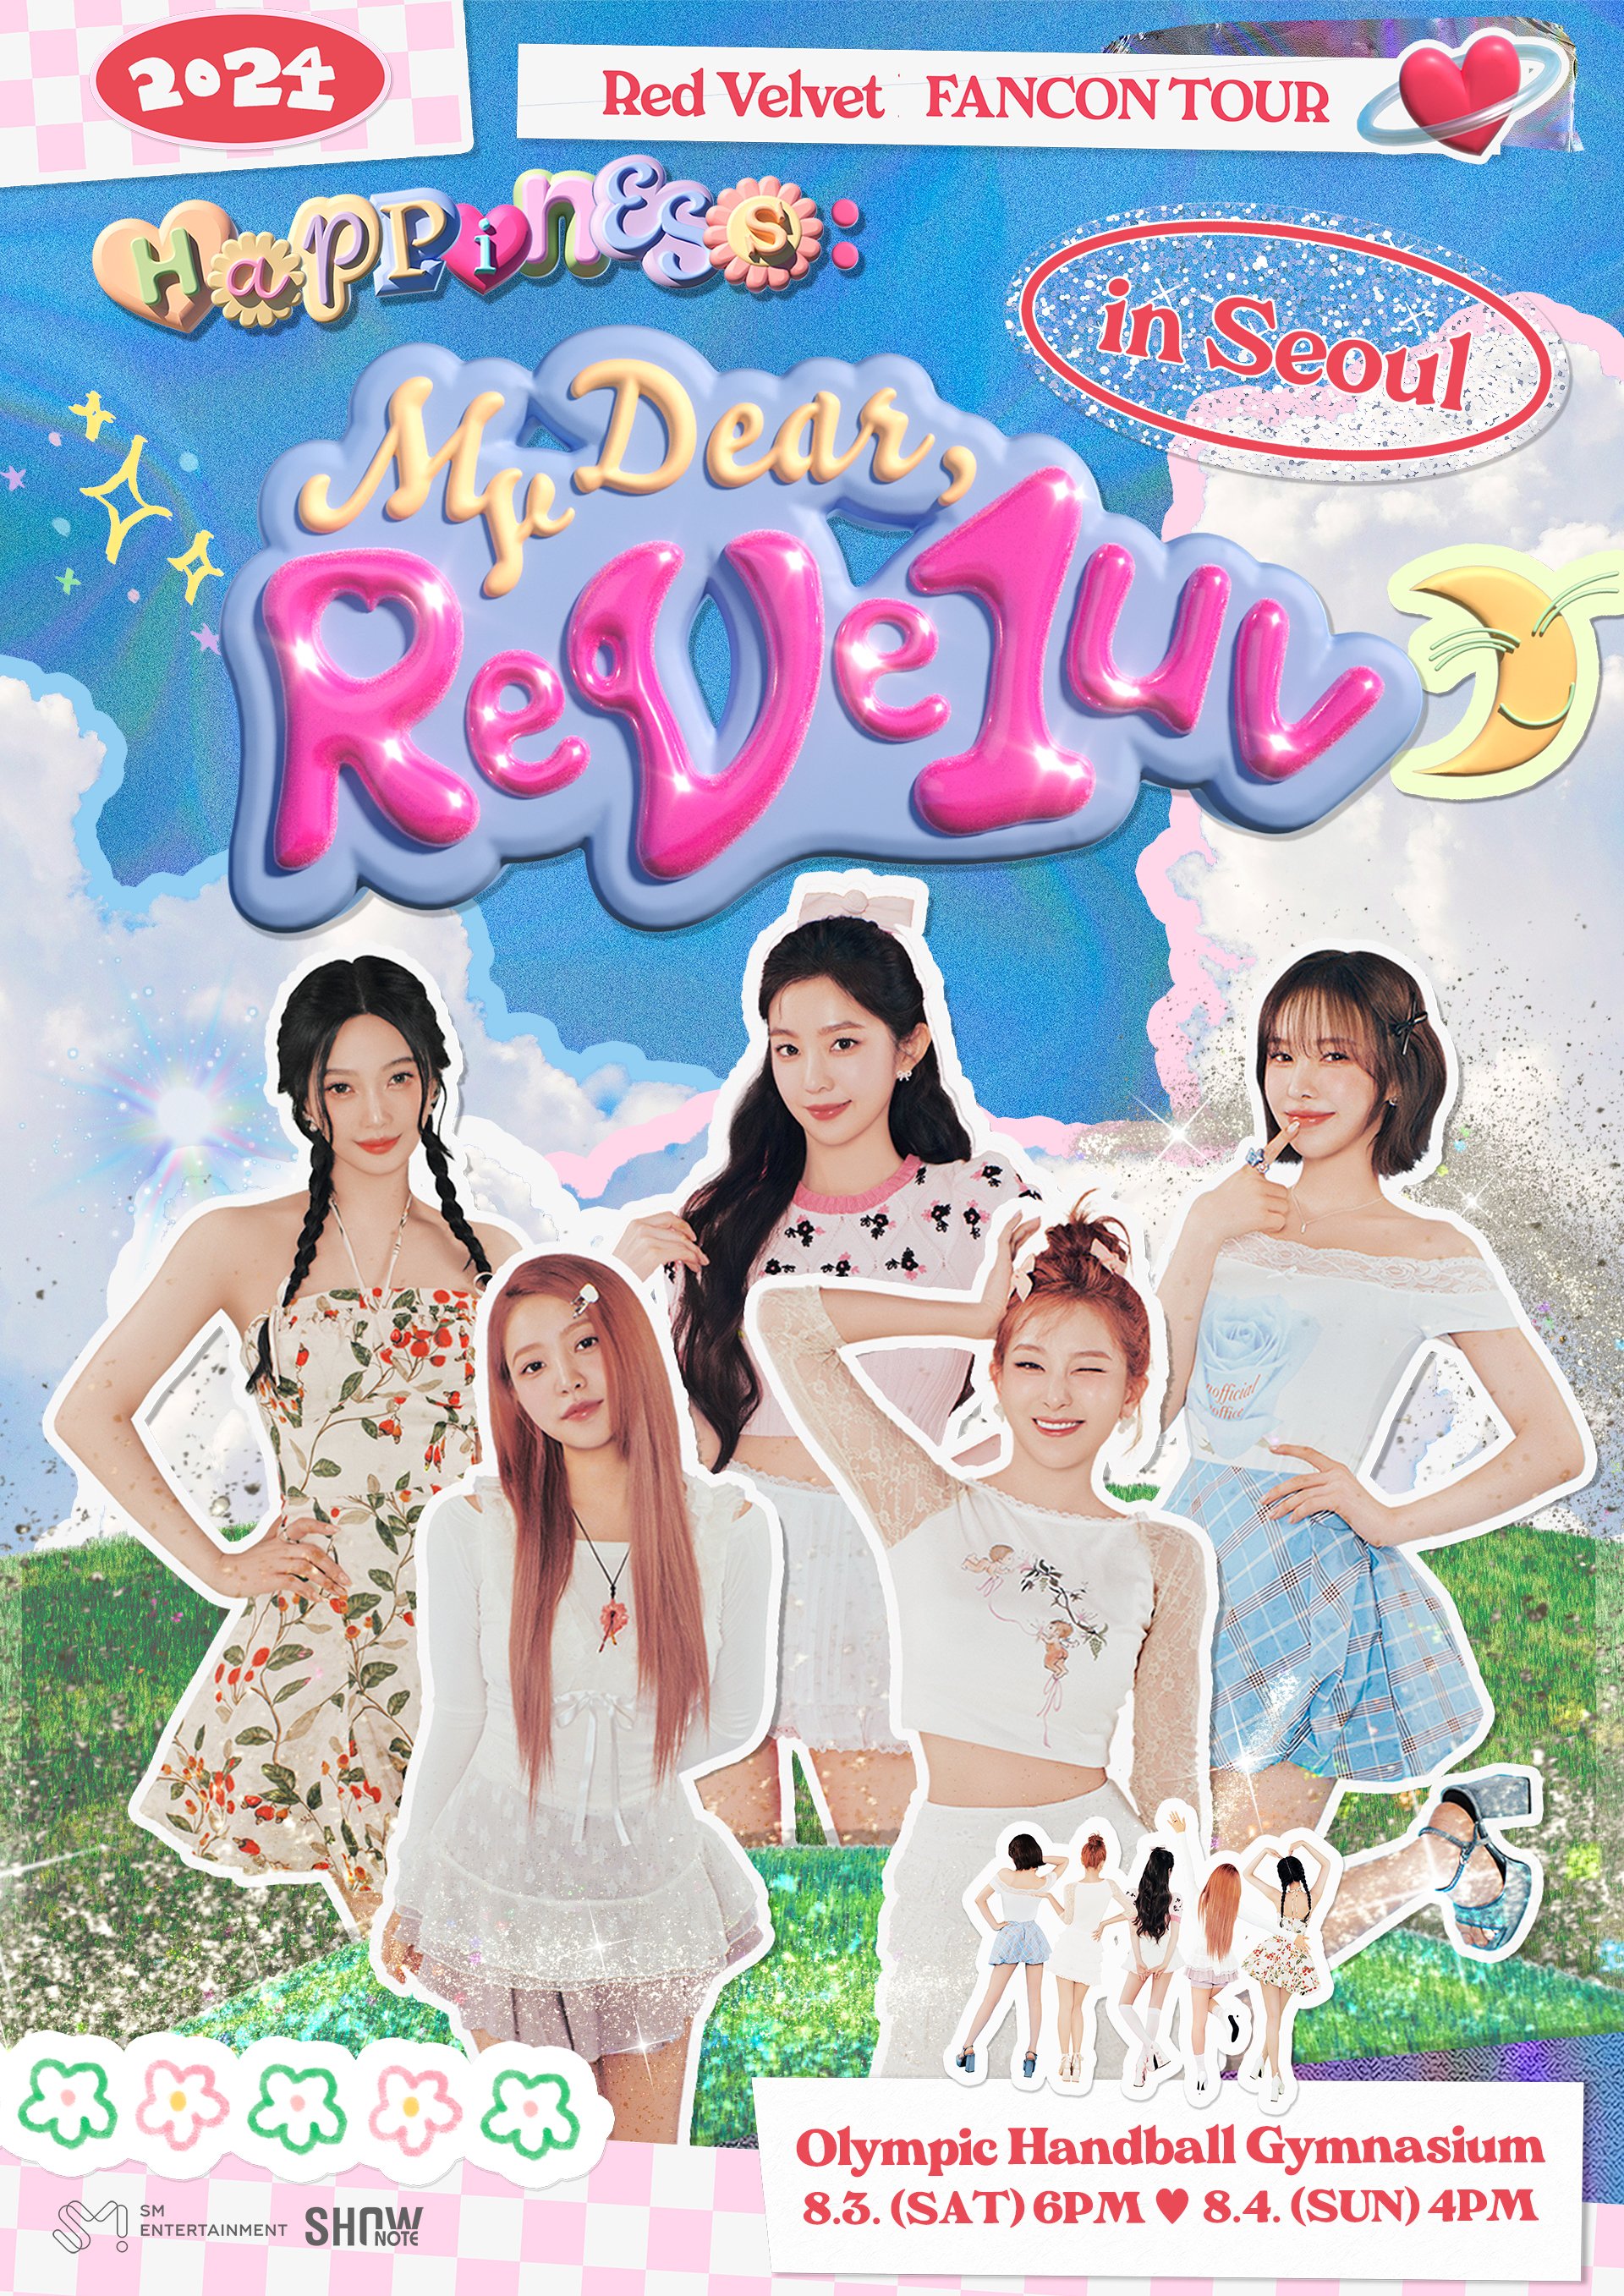 Red Velvet Announces Fancon Tour 